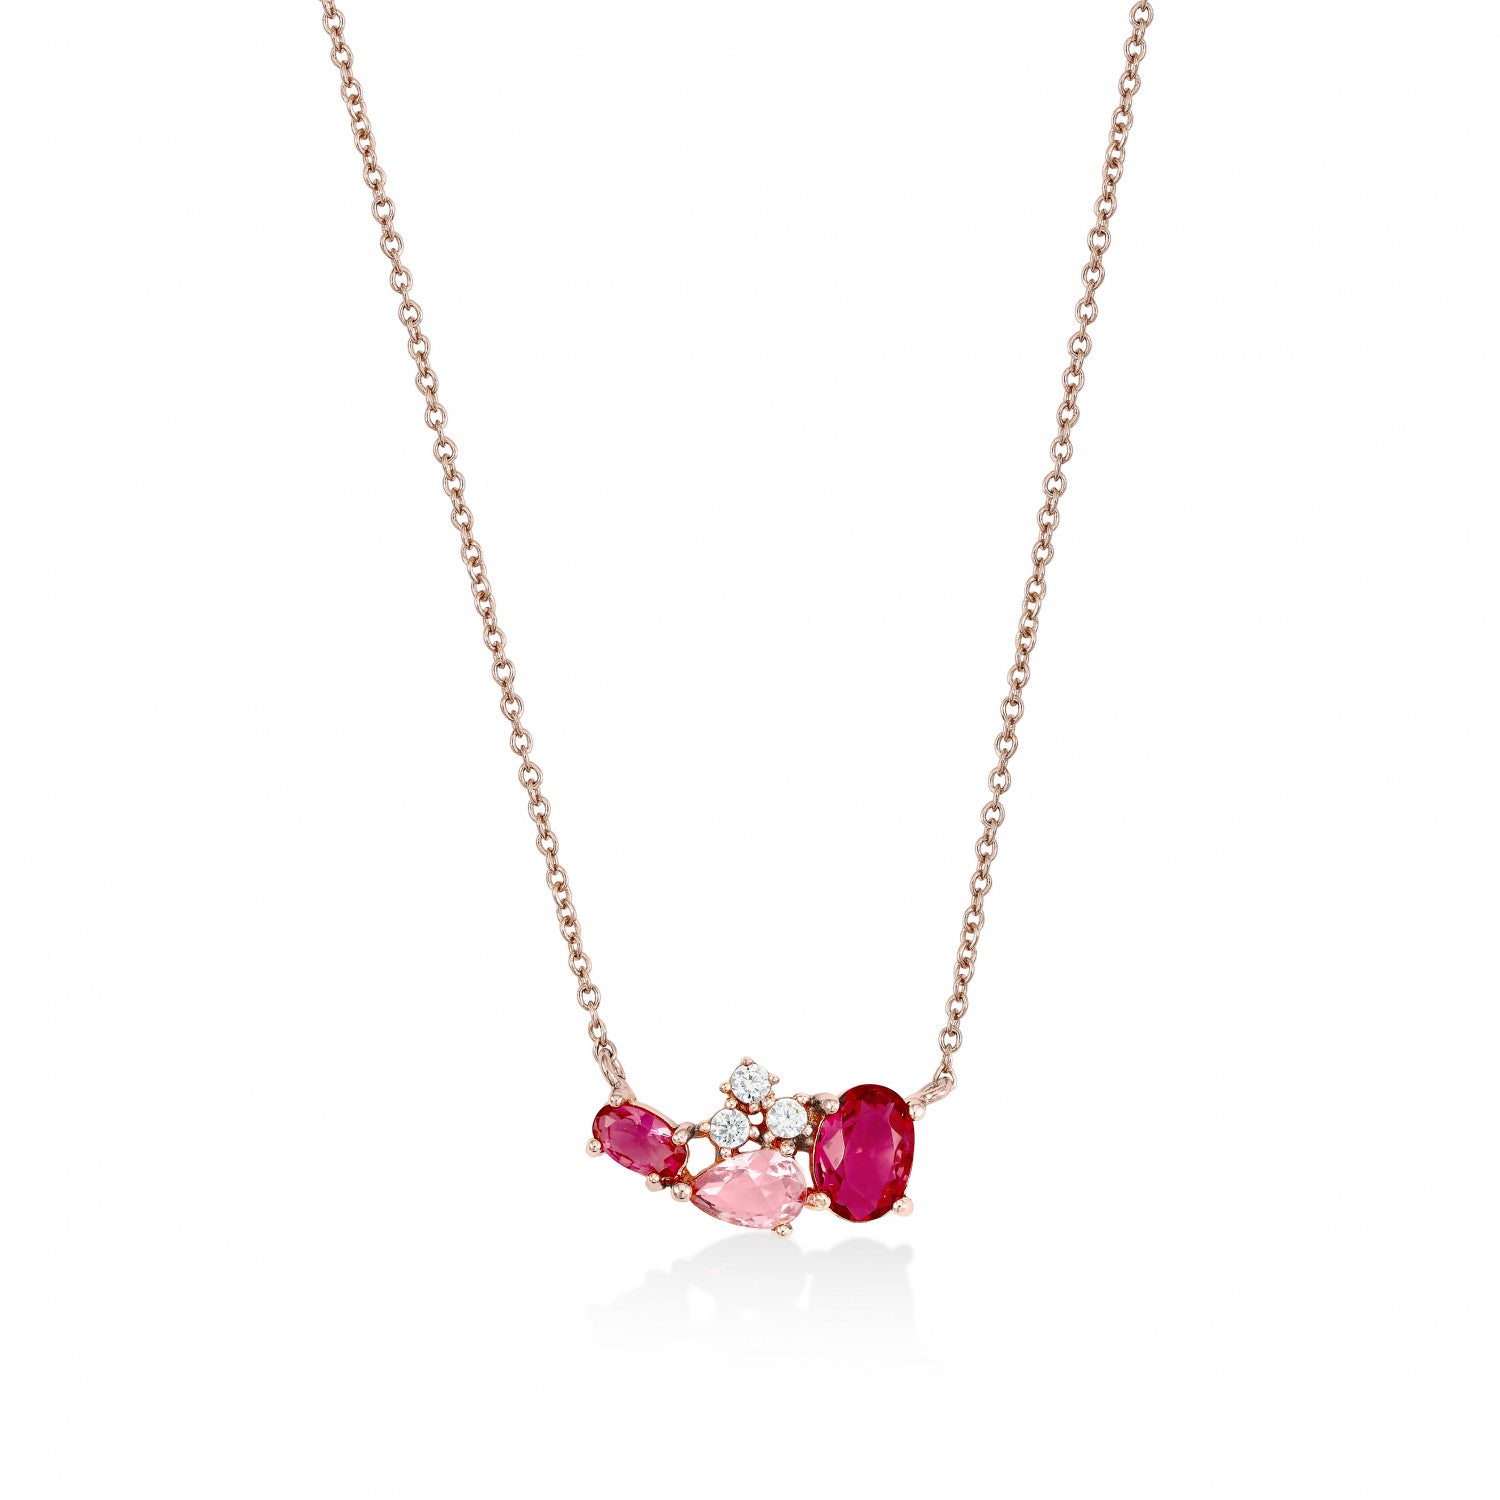 Collar · Collares con piedras en tonos rosados y rojizos